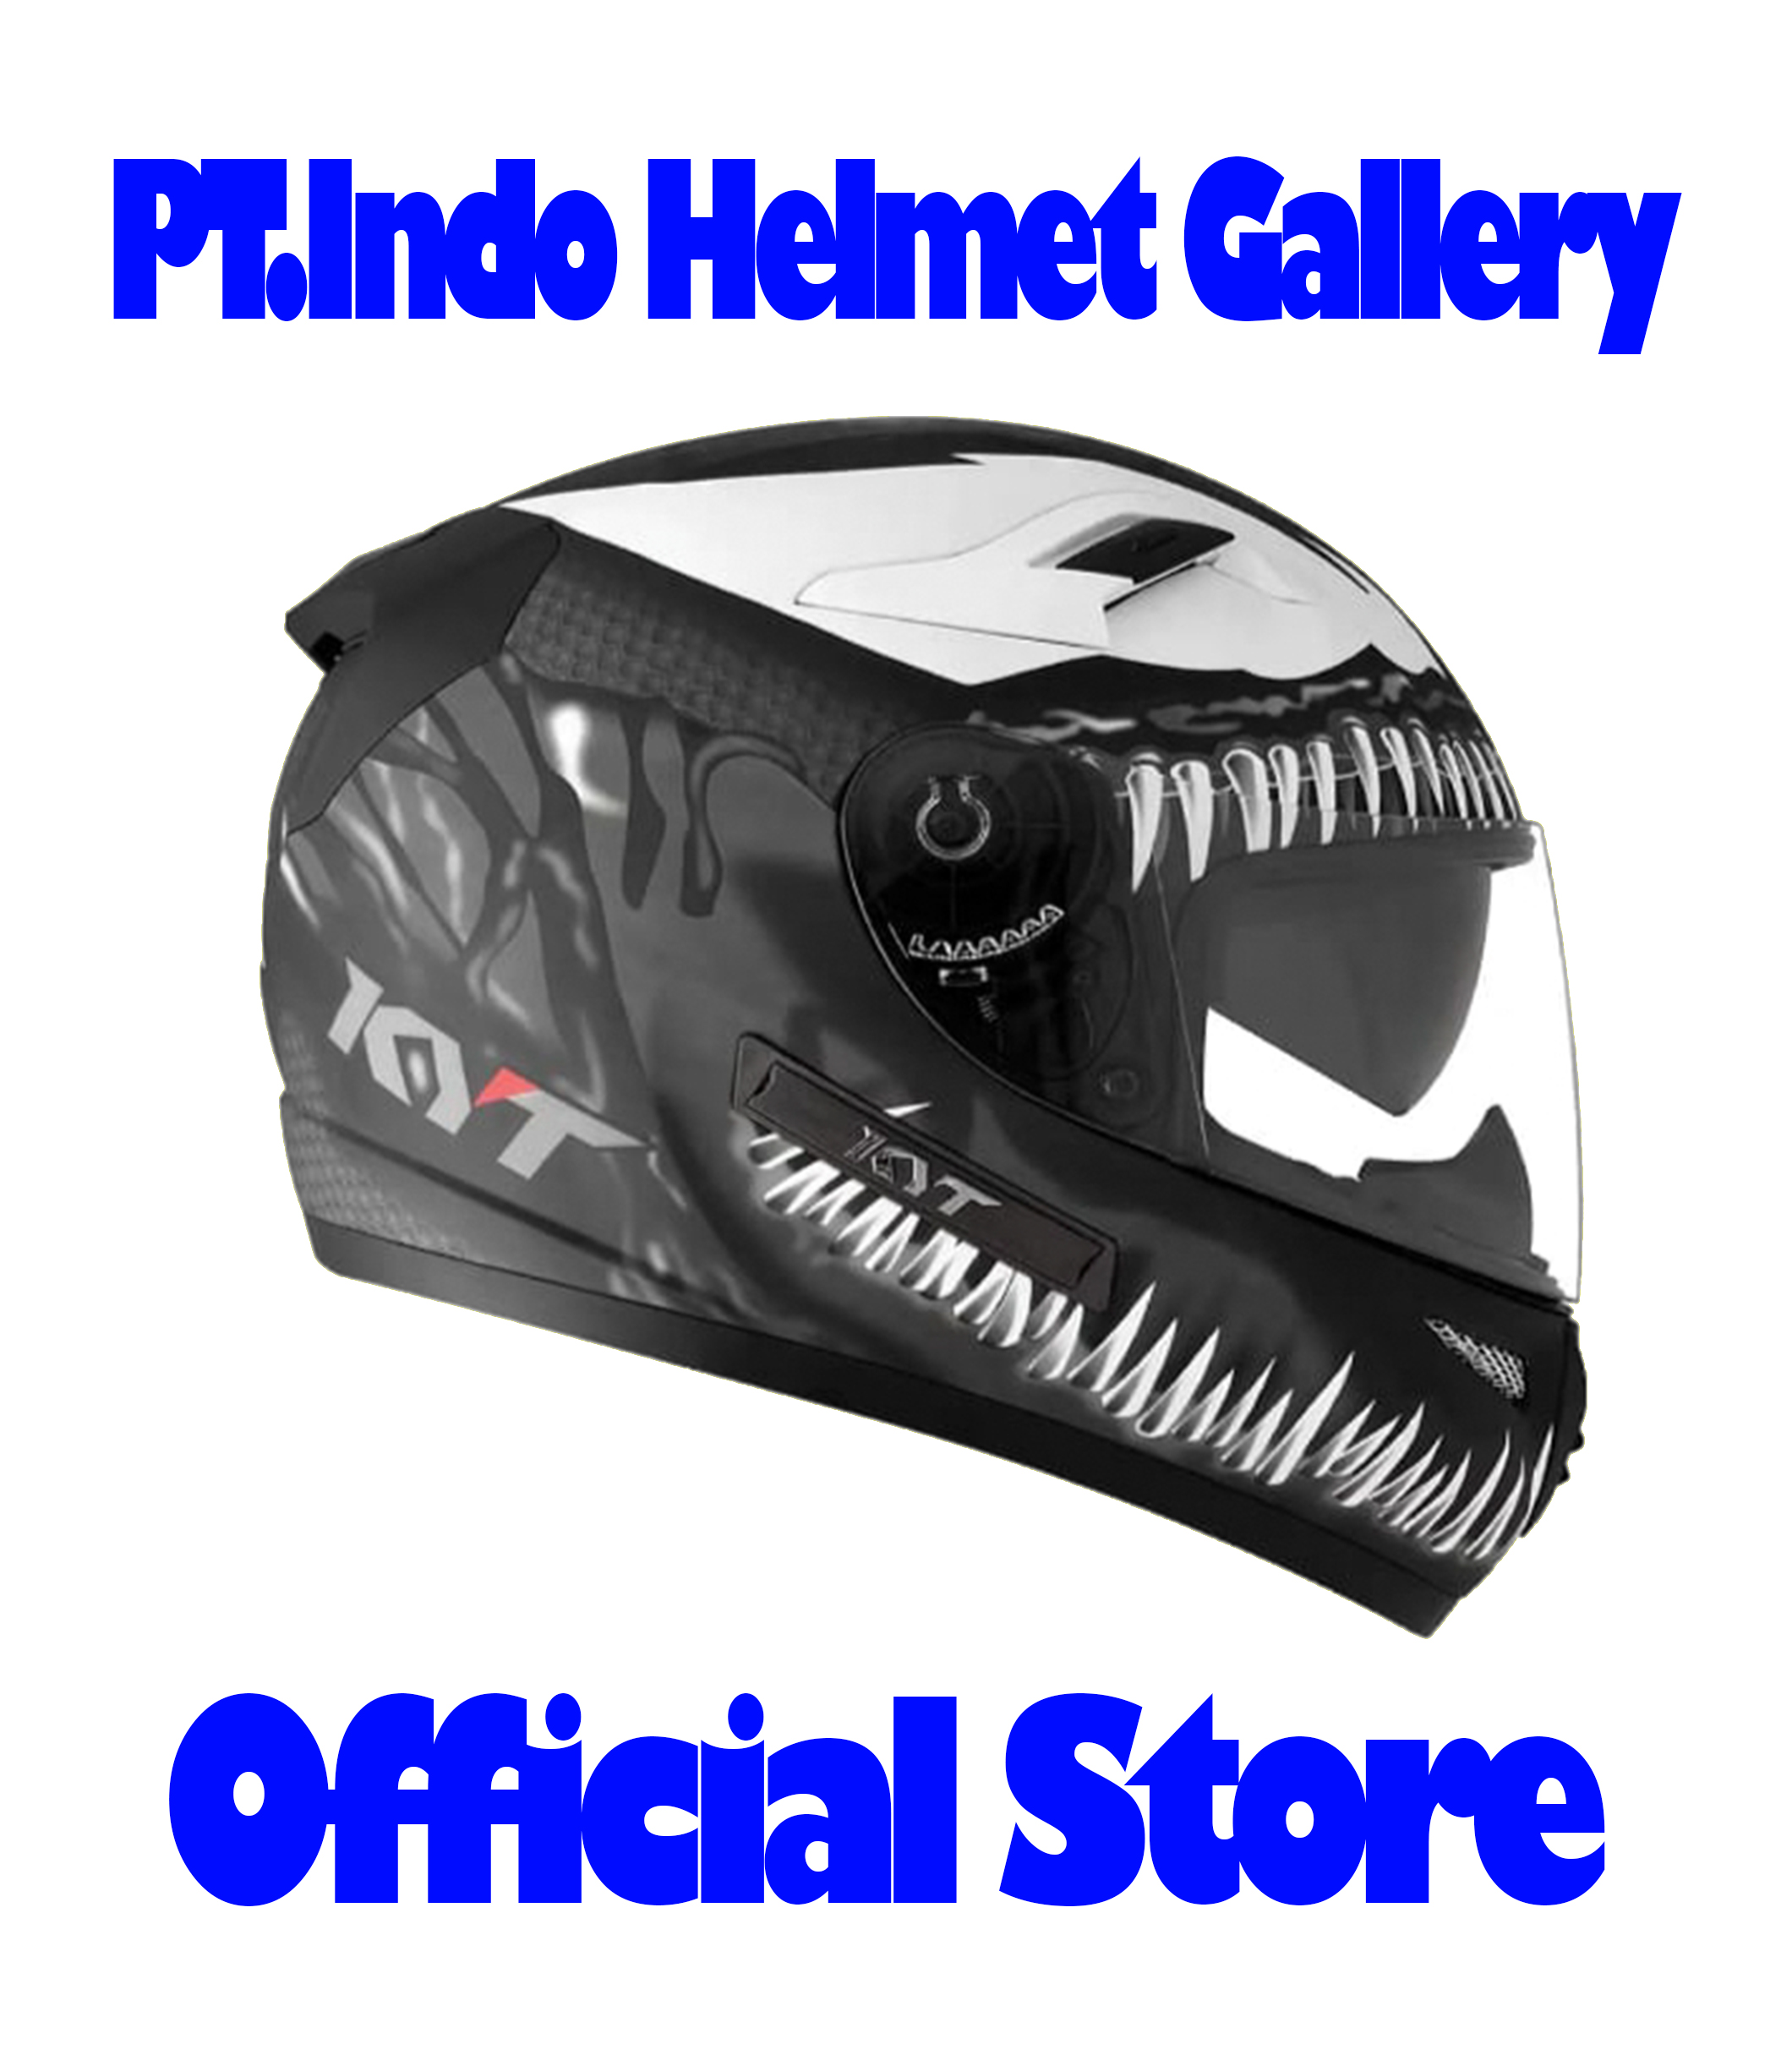 Indo Helmet Gallery